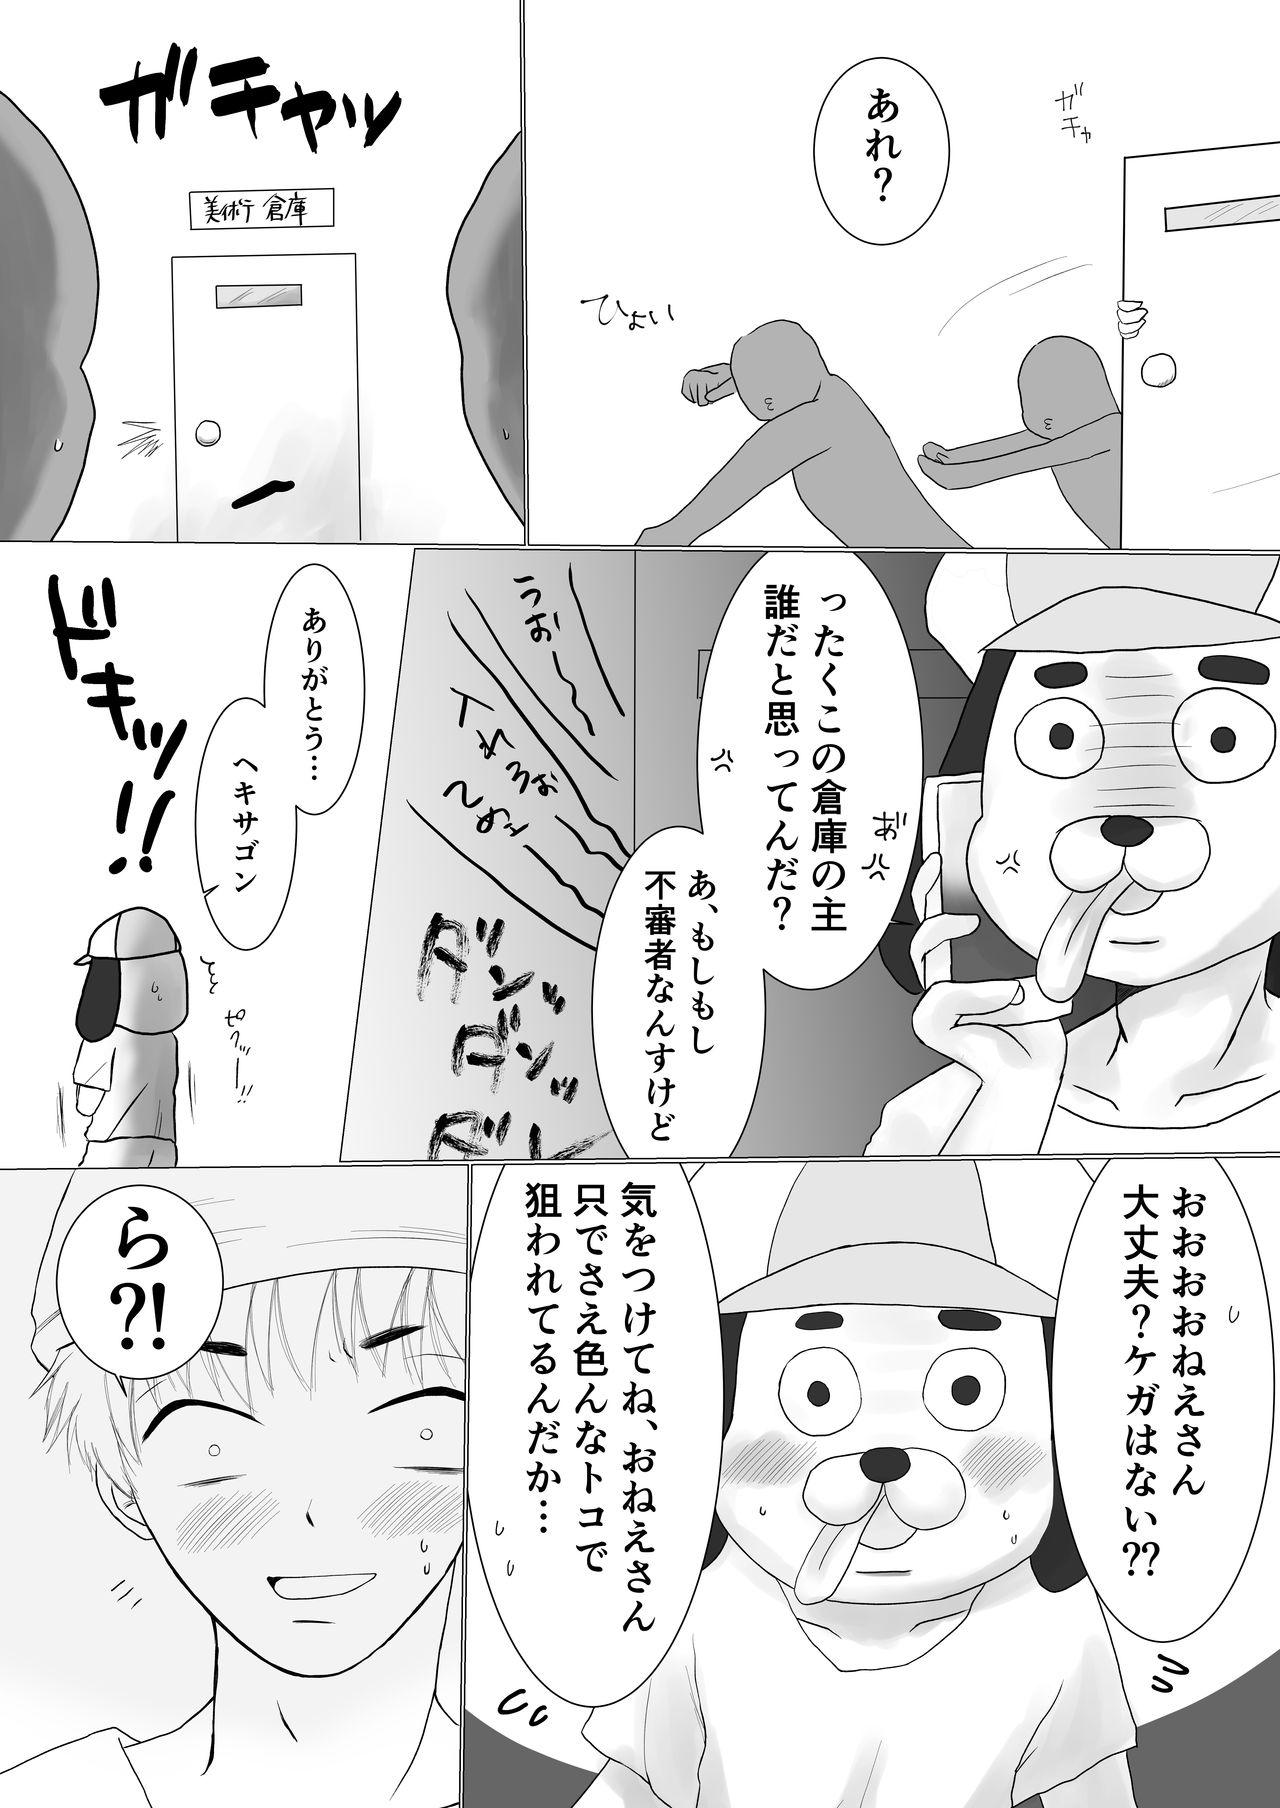 Arrecha Onegai! Hekisagon - Osomatsu-san Farting - Page 9